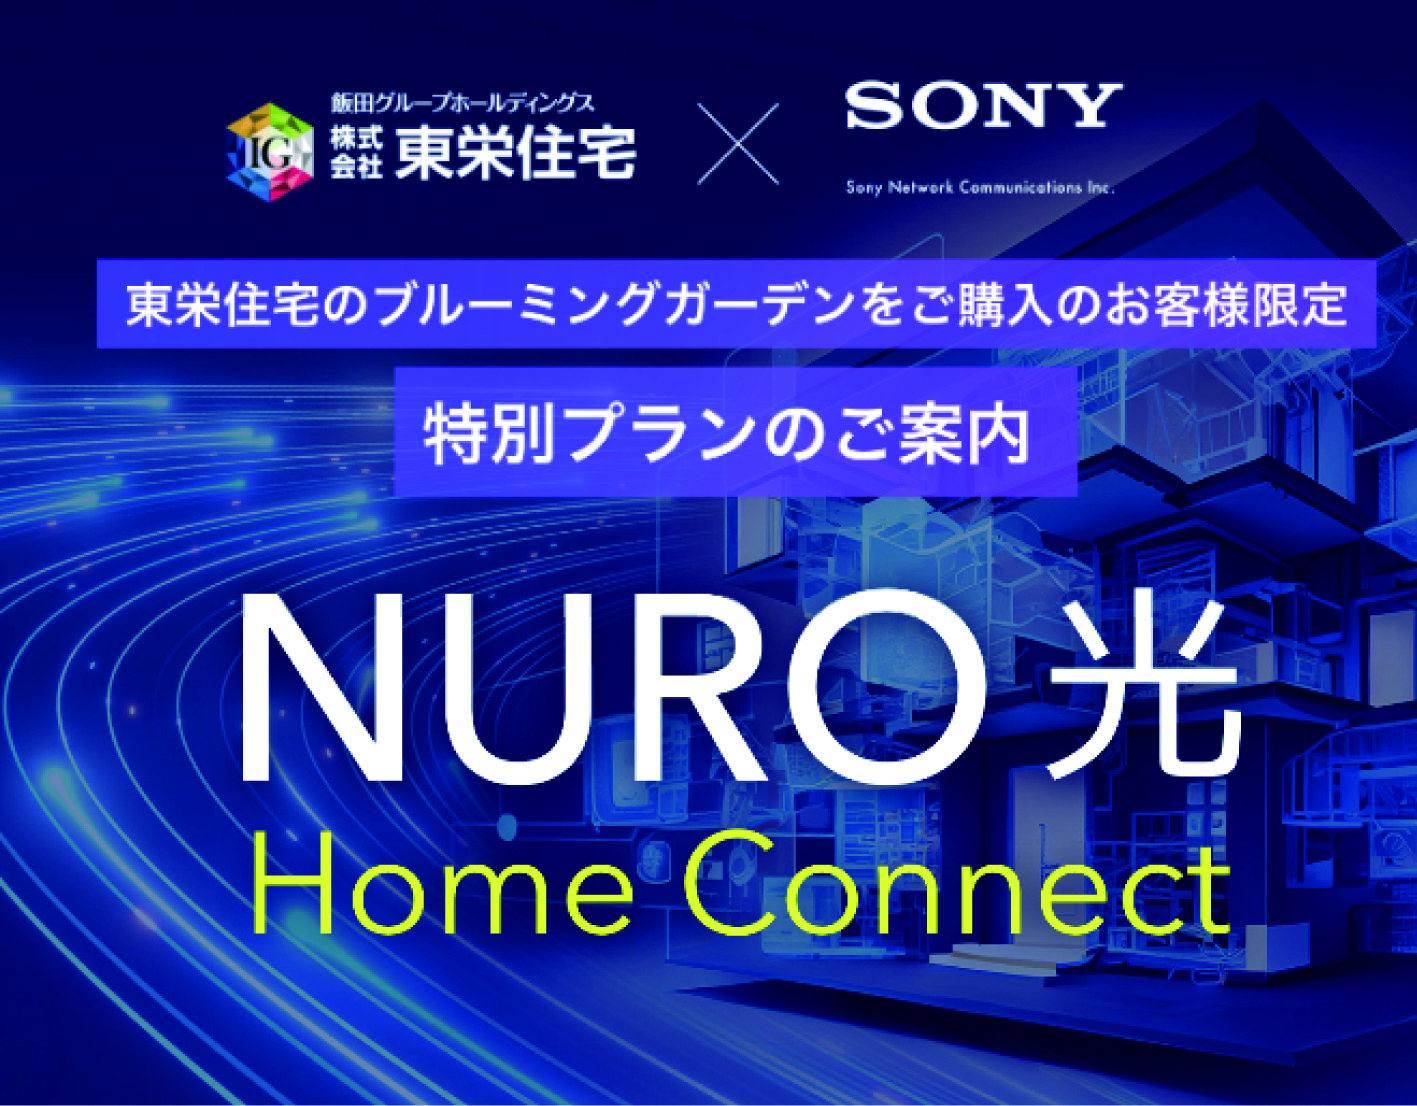 「NURO 光 Home Connect」高速インターネットがお得に使える特別プラン対象物件